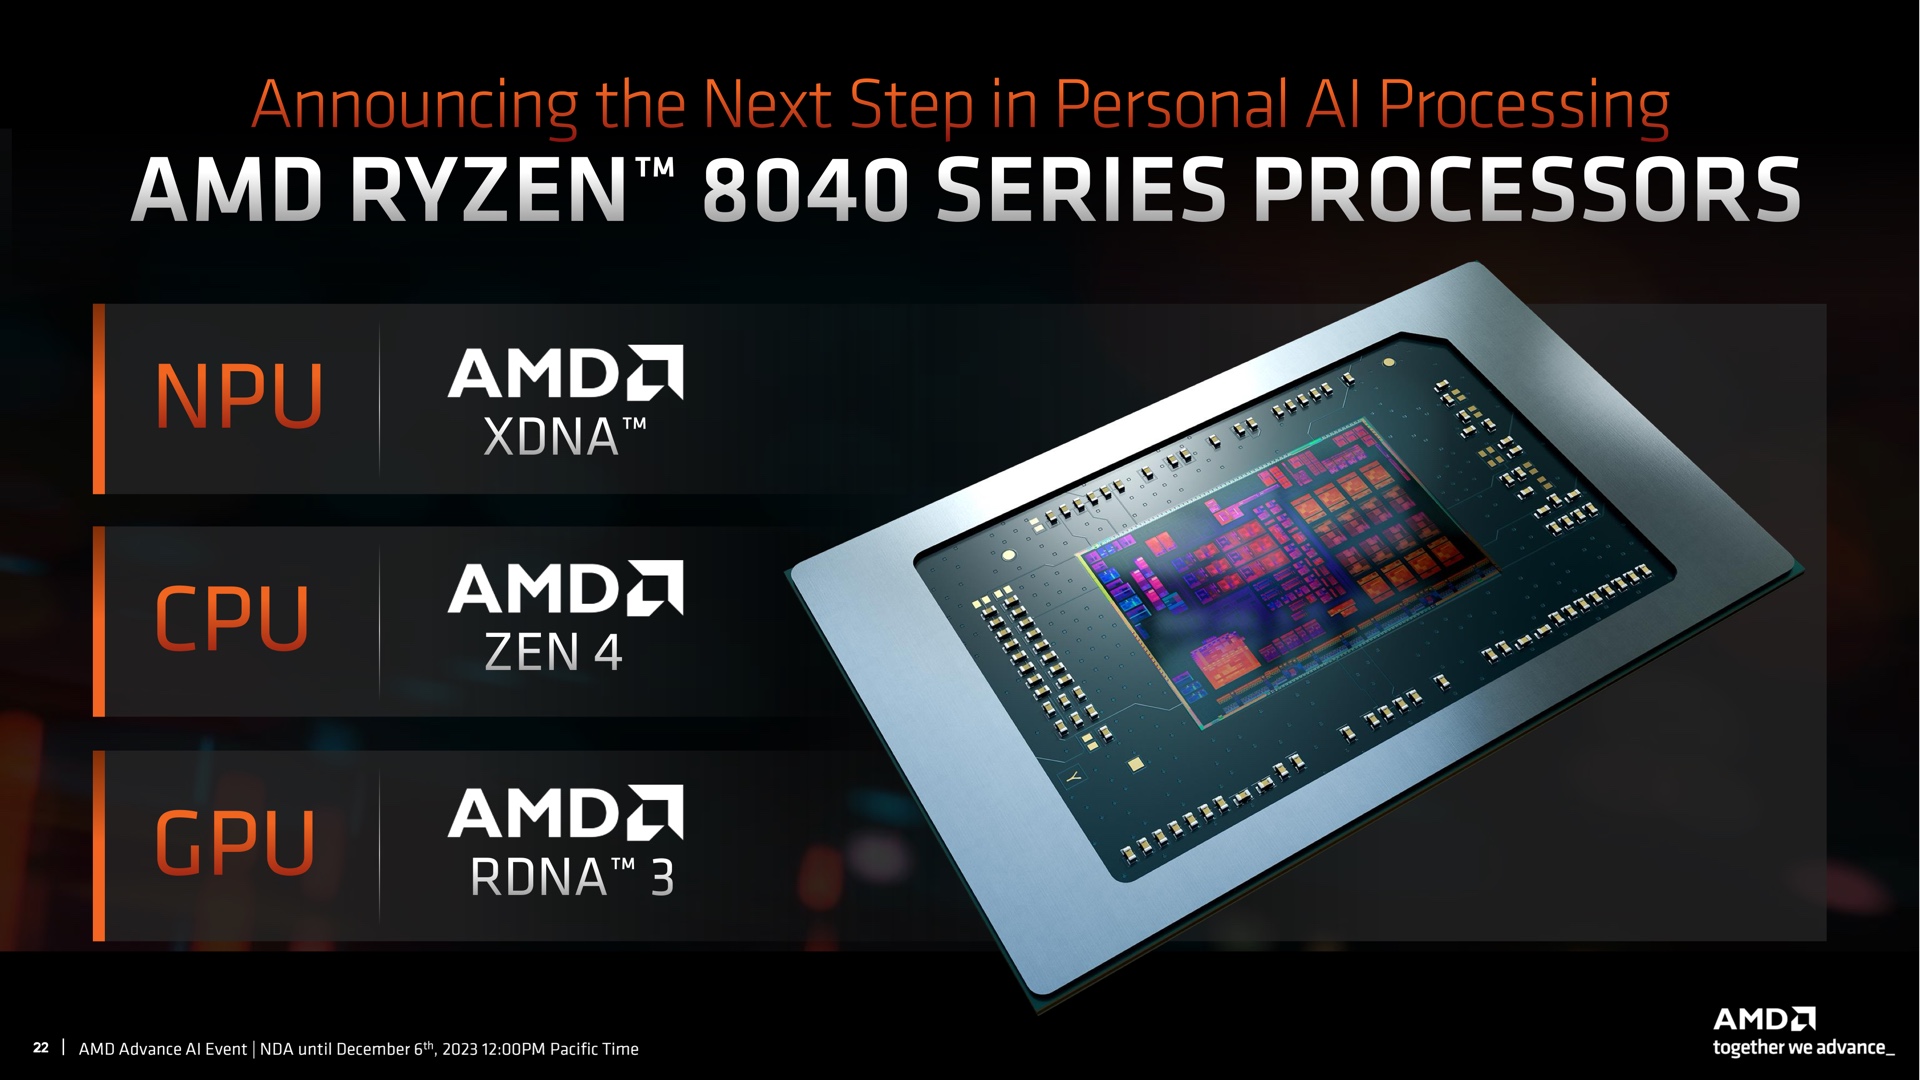 AMD annoncerede pludseligt Ryzen 8040 mobile processorer med Zen 4-kerner, RDNA 3-grafik og XDNA NPU neuralchip